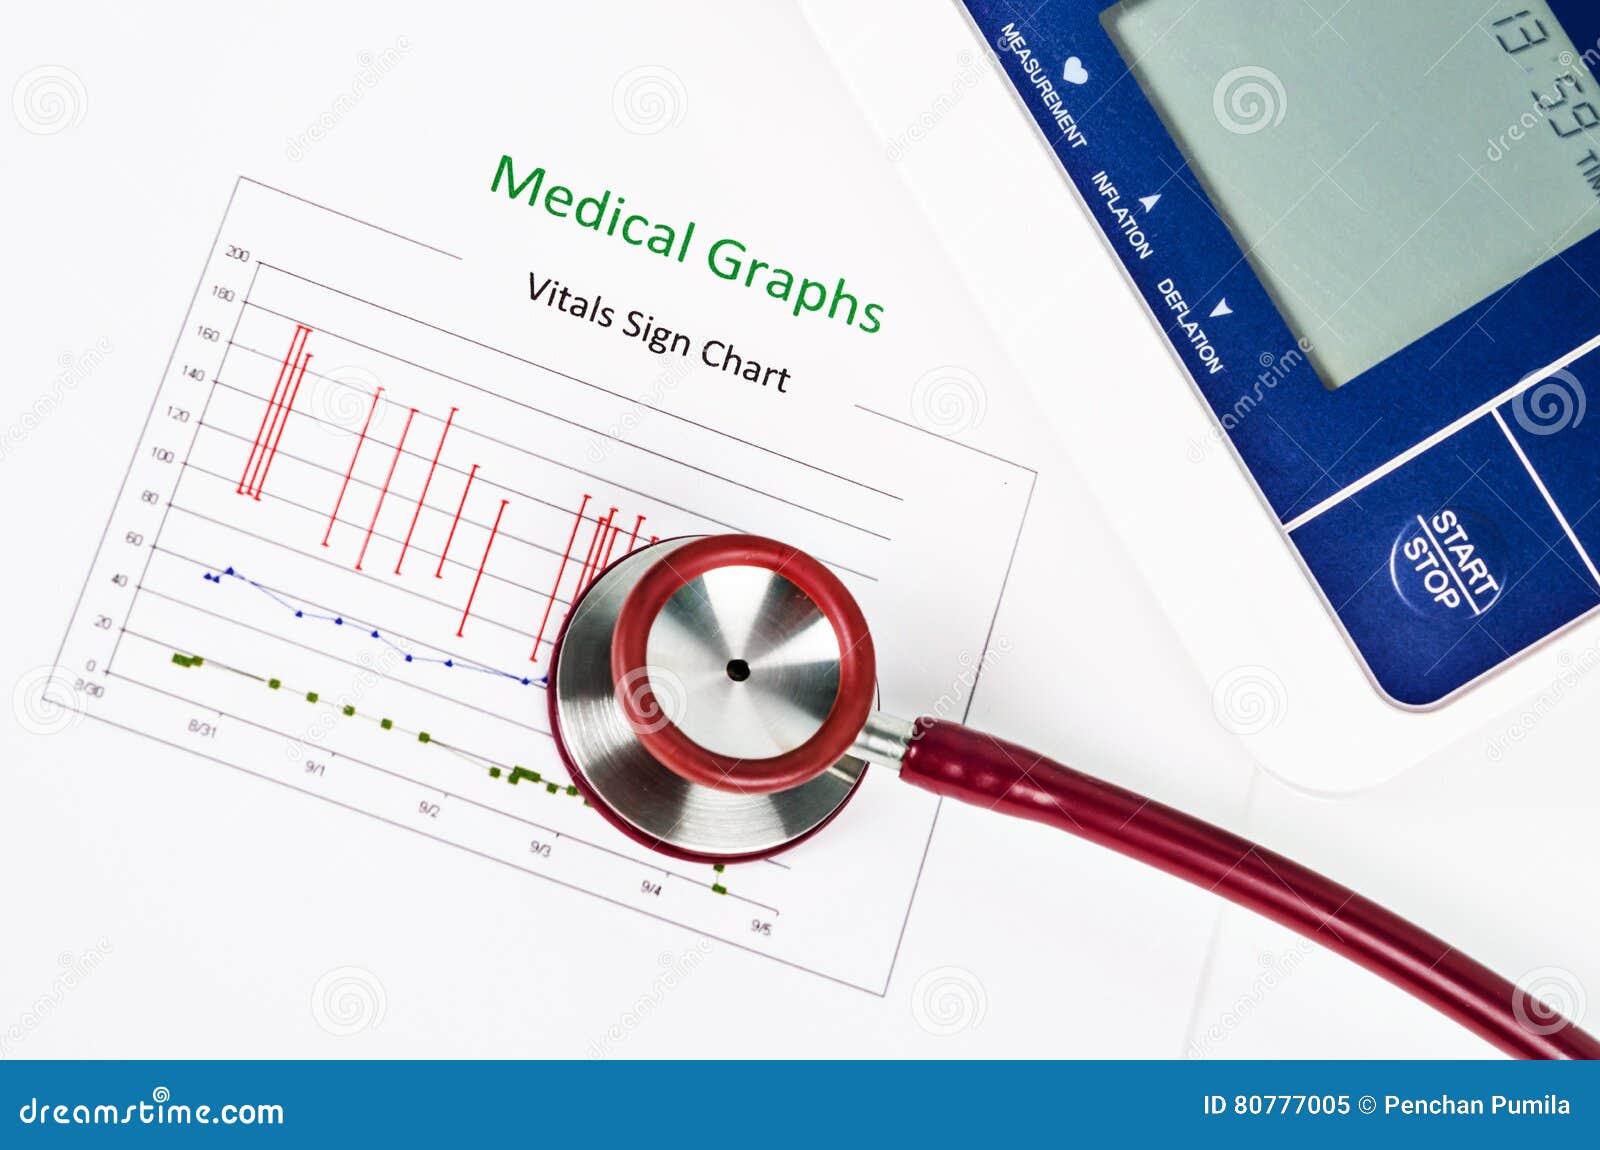 Medical Vitals Chart